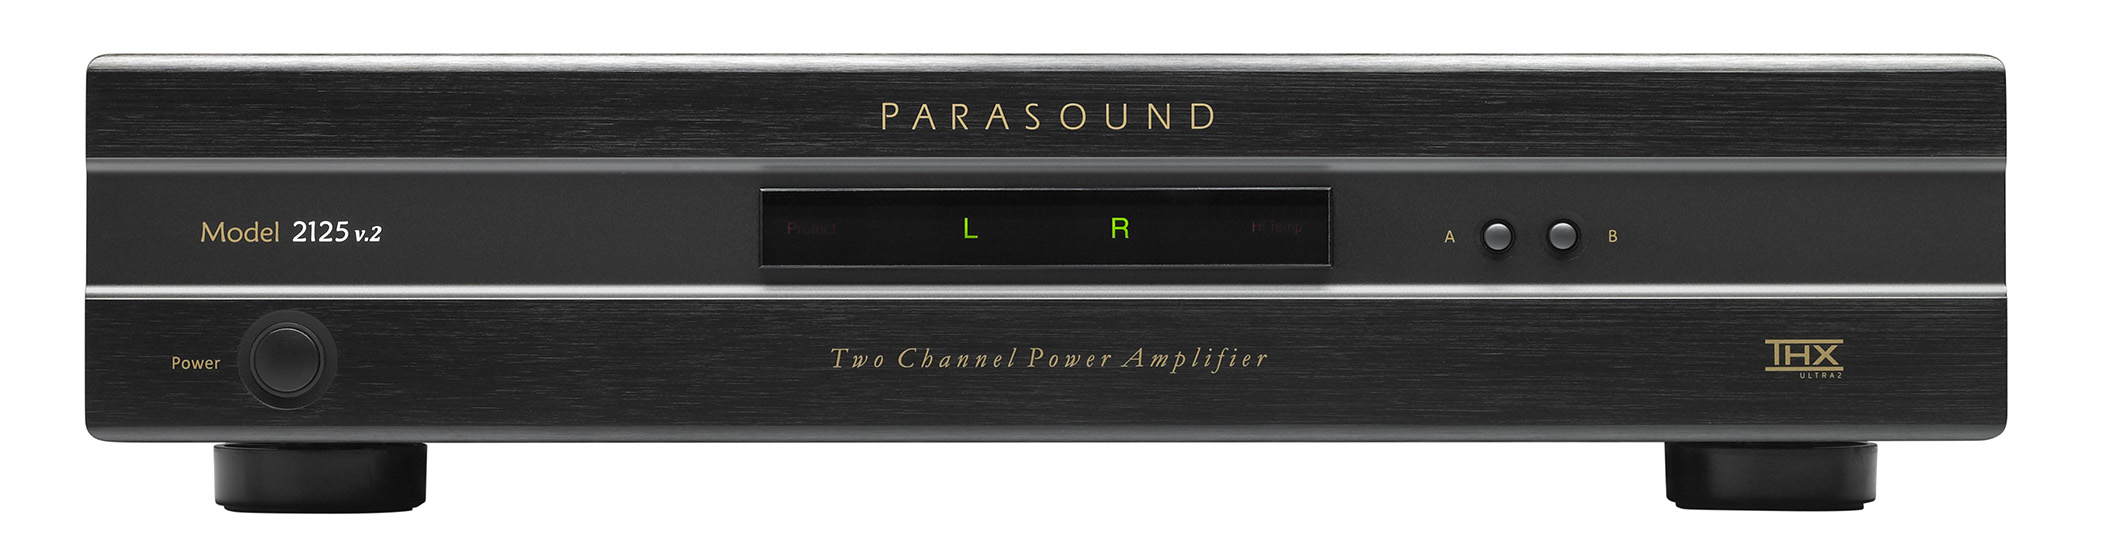 Усилитель мощности Parasound Model 2125 v.2 black